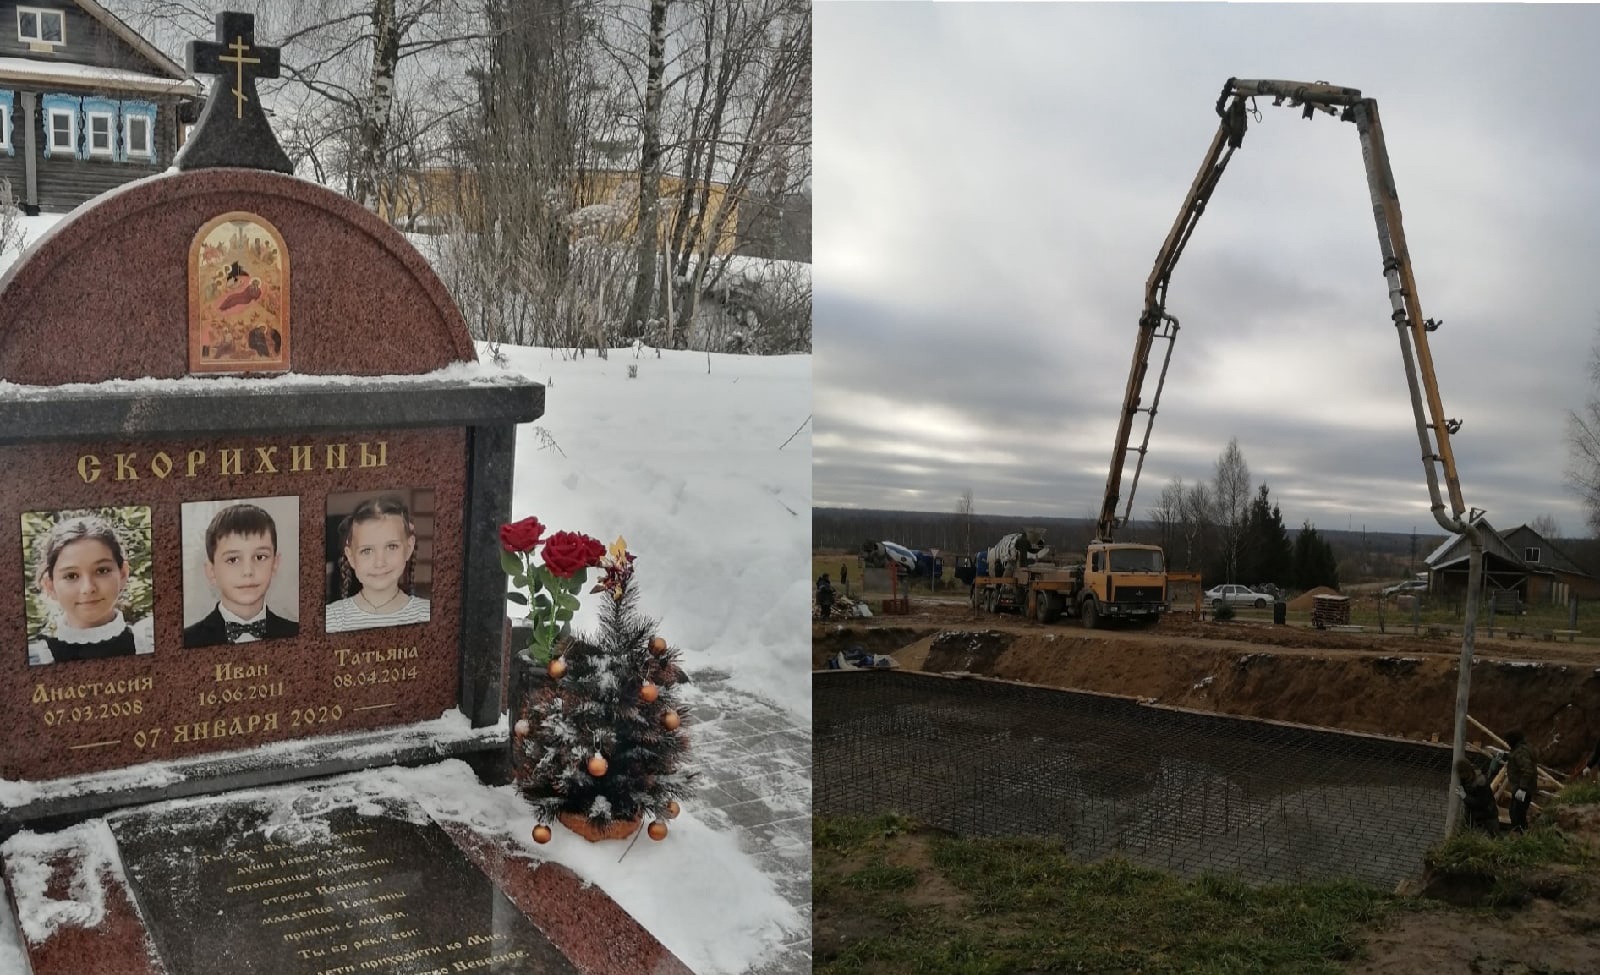  В Ярославле мать троих погибших детей просит помощи в строительстве храма